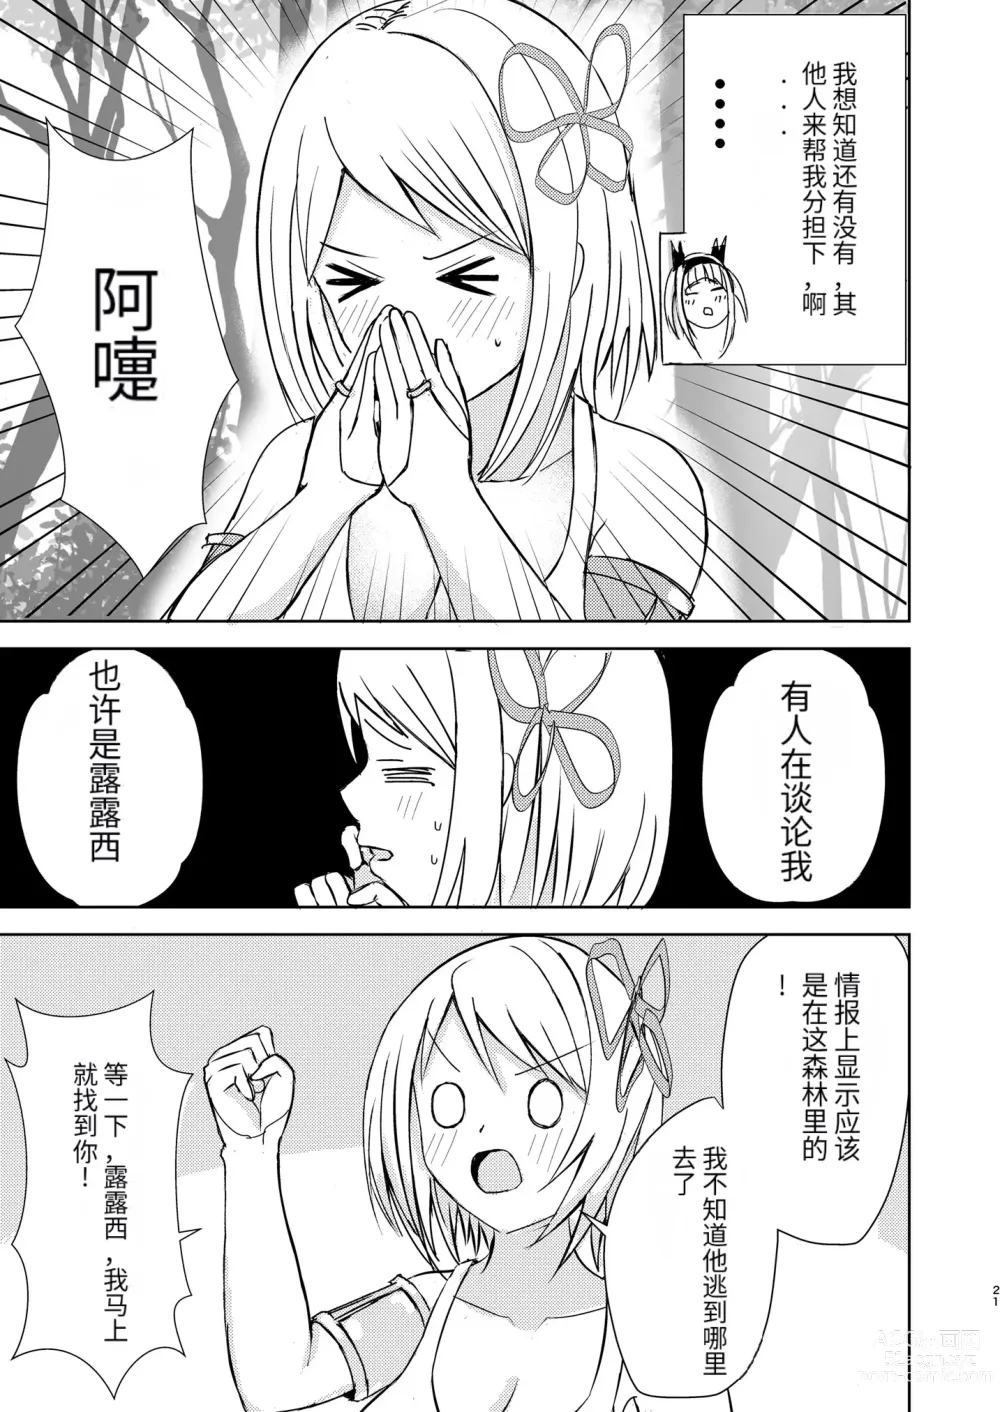 Page 21 of doujinshi Gaman Dekinai Ore no Karada wa Kyou mo Kenko!